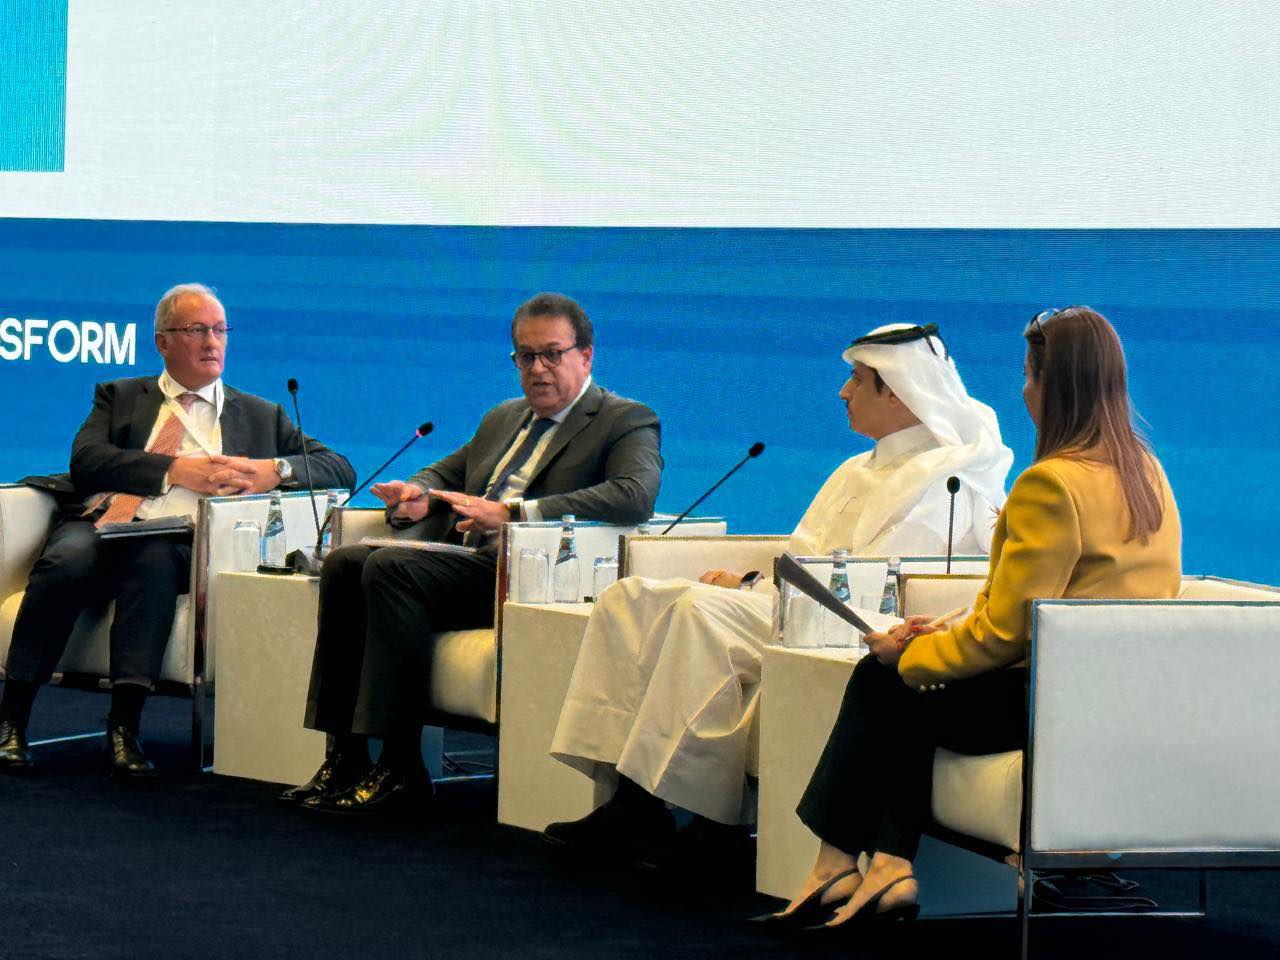 وزير الصحة خلال مؤتمر أهداف قطر: توفير رعاية صحية جيدة وبأسعار معقولة حق أساسي لجميع الأفراد